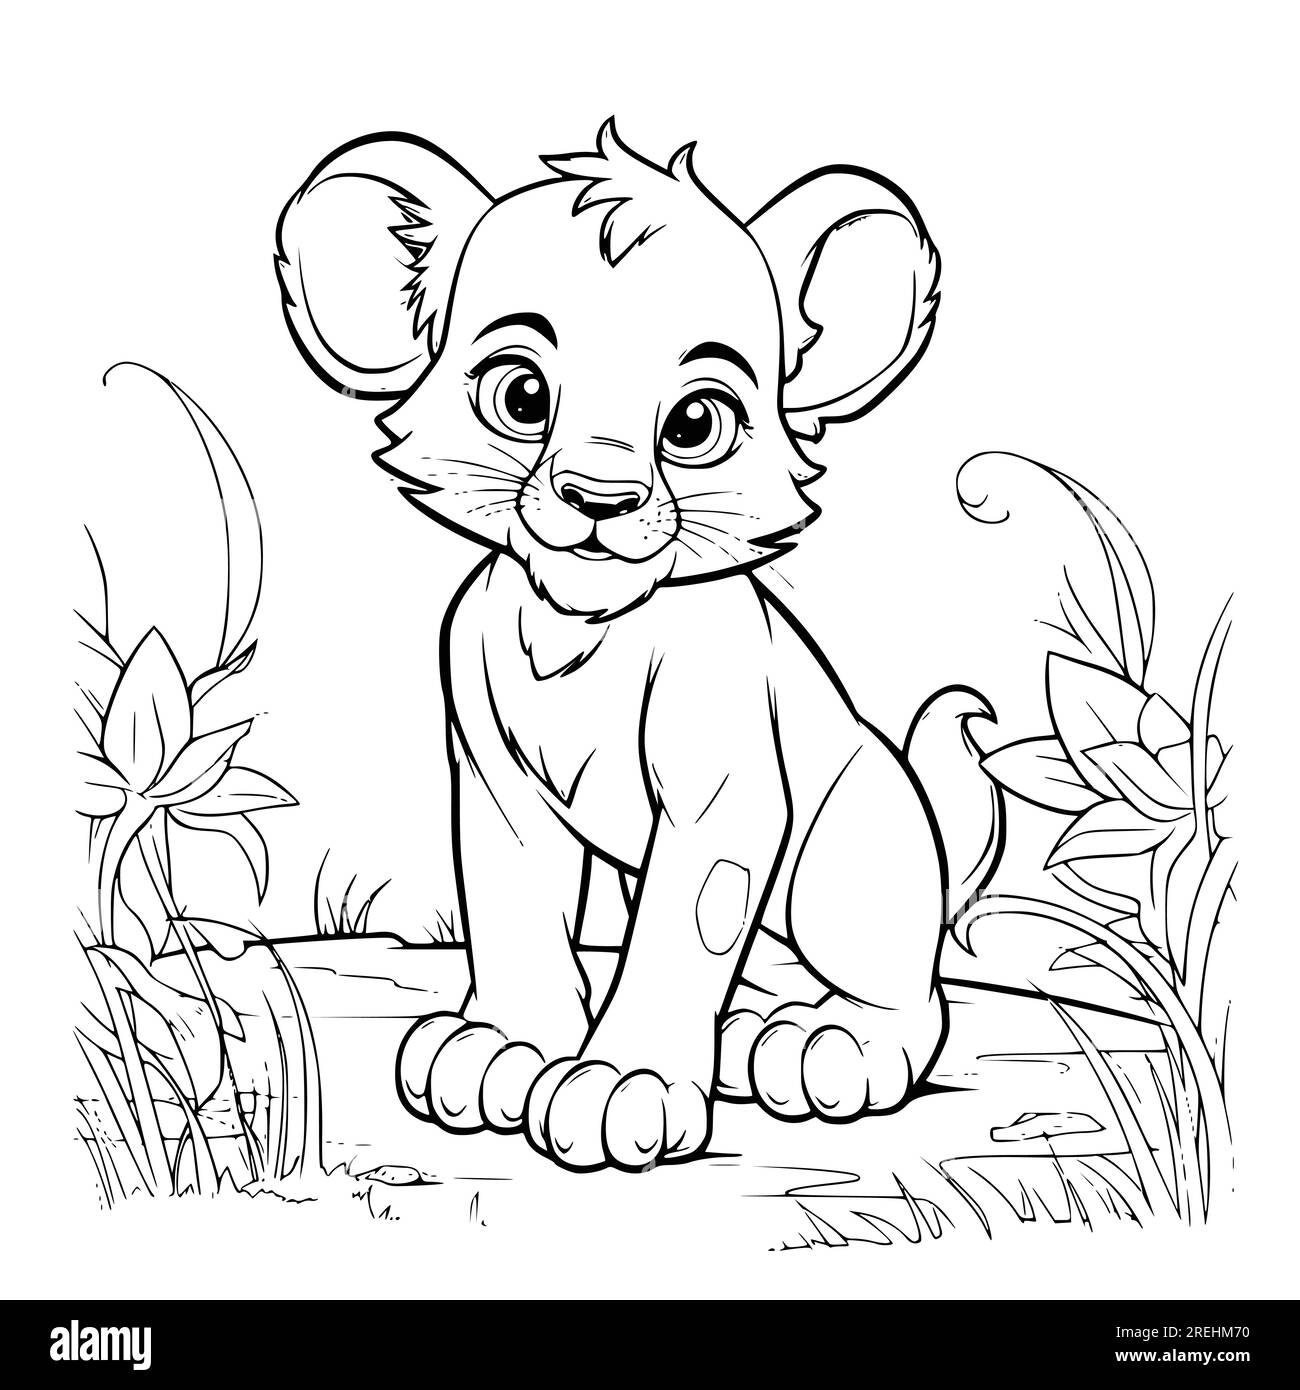 Disegno di pagine da colorare cuccioli di leone per bambini Immagine e  Vettoriale - Alamy